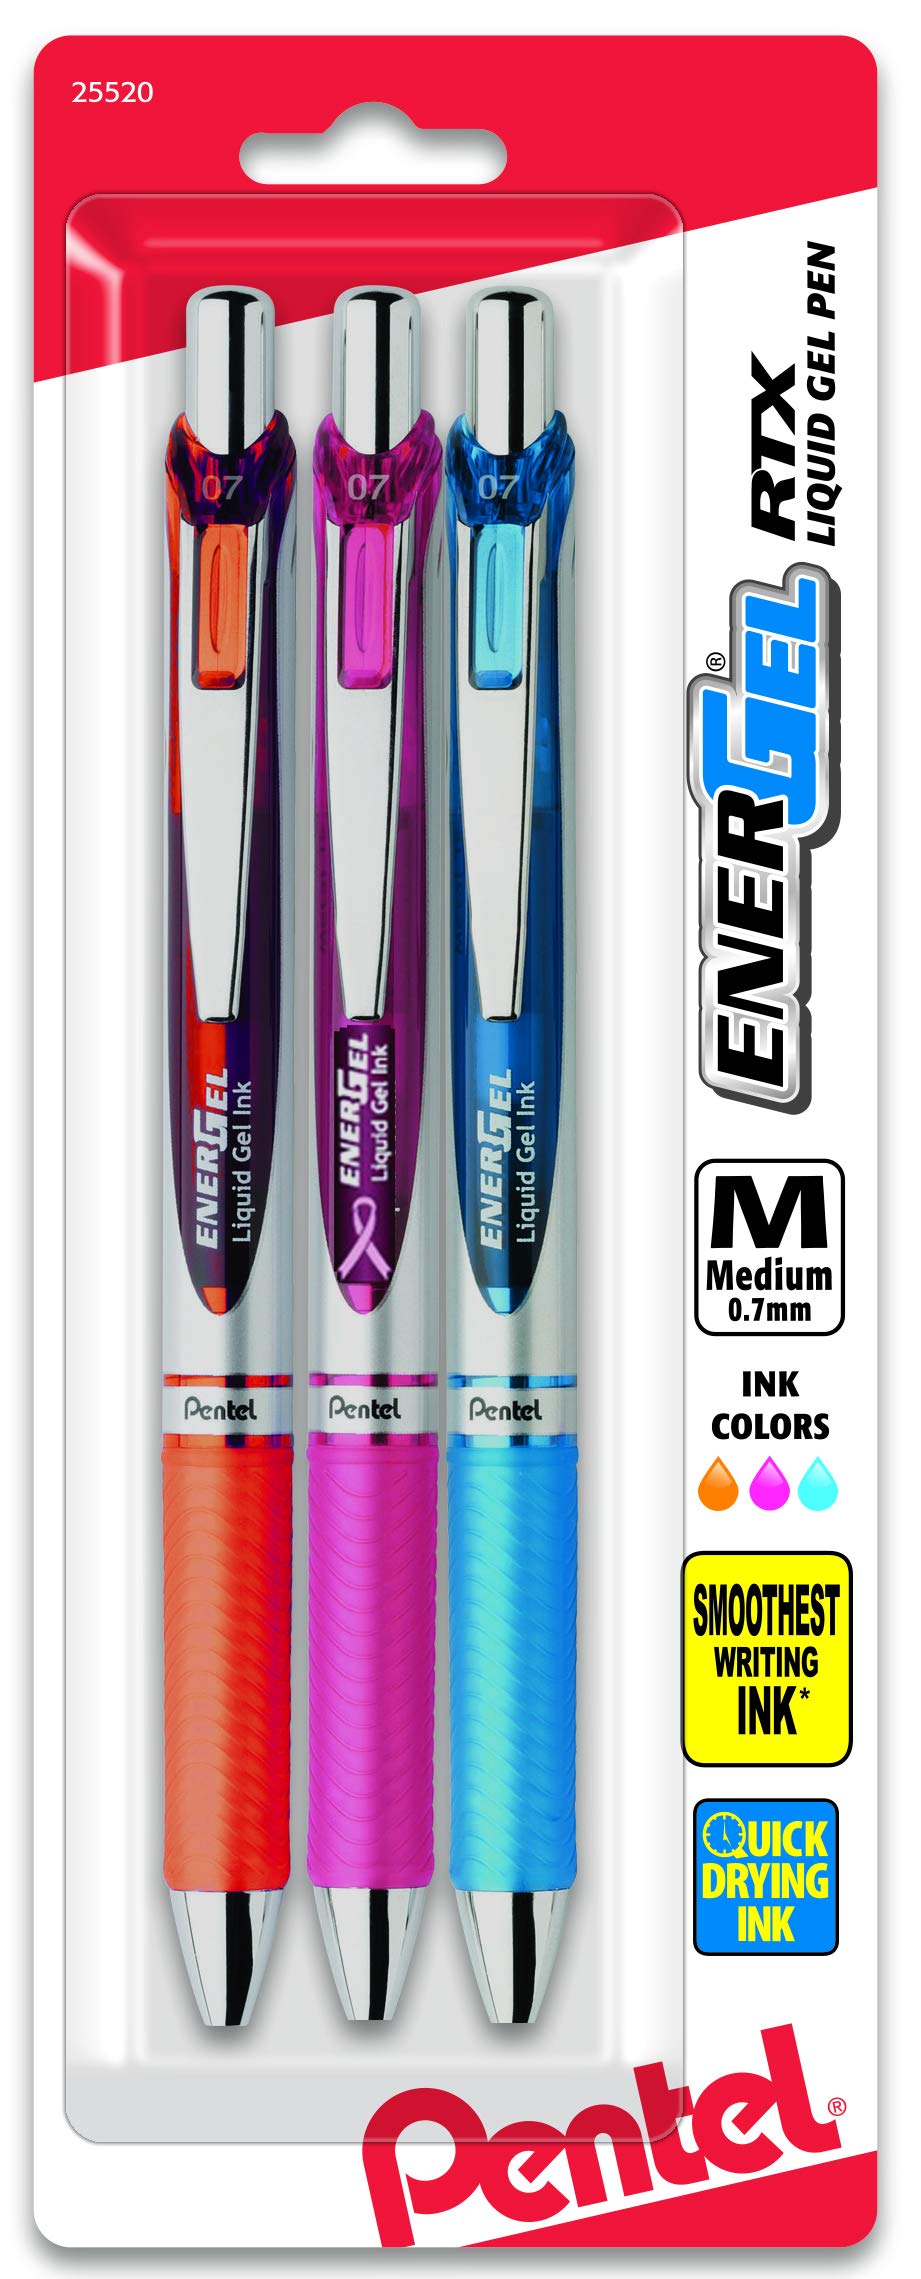 Pentel EnerGel Deluxe RTX Retractable Liquid Gel Pen, Medium Line, Metal Tip, Assorted Ink, 3 Pack (BL77BP3M2)